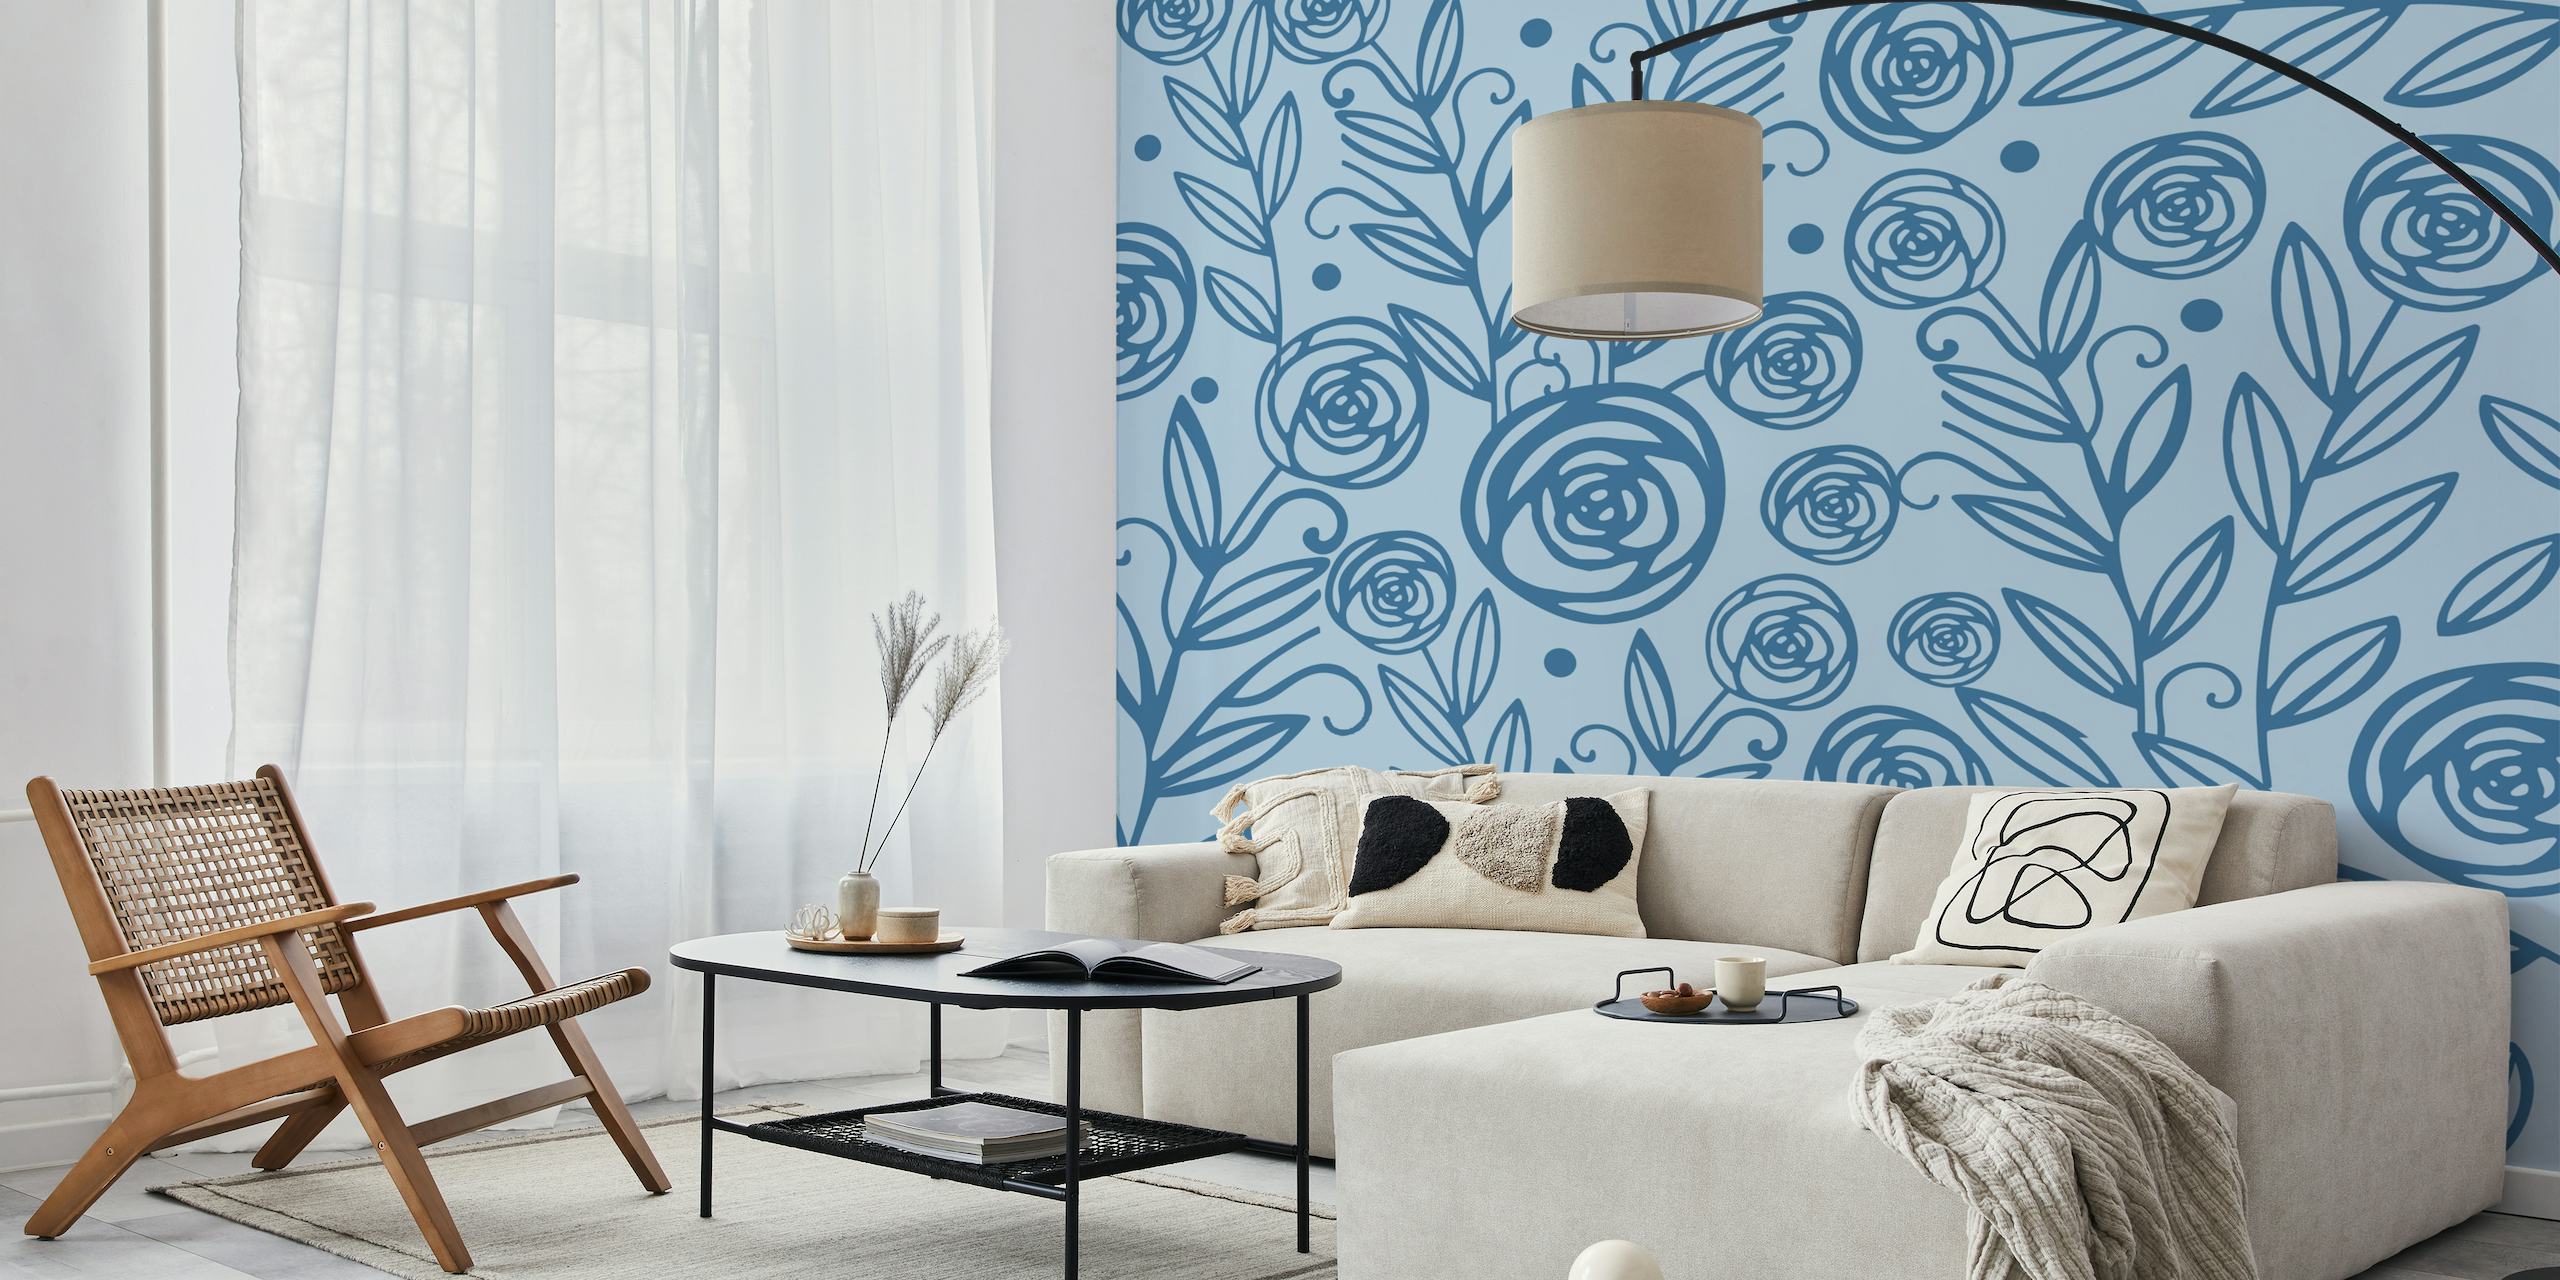 Nvy Blue Roses wallpaper